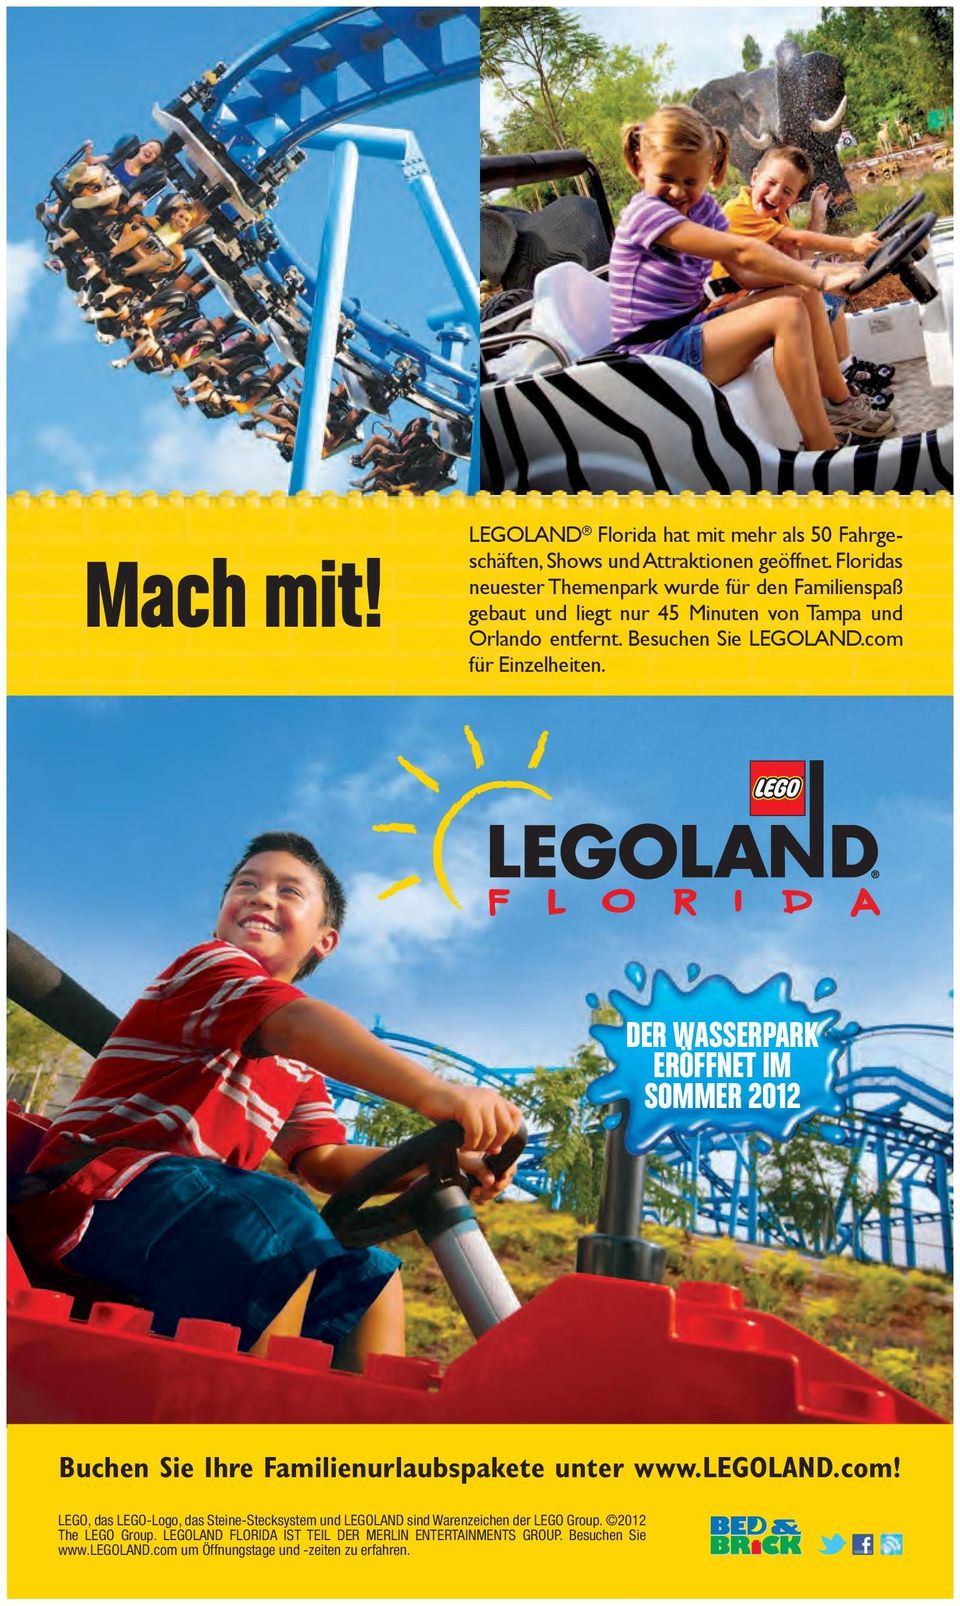 com für Einzelheiten. DER WASSERPARK ERÖFFNET IM SOMMER 2012 Buchen Sie Ihre Familienurlaubspakete unter www.legoland.com! LEGO, das LEGO-Logo, das Steine-Stecksystem und LEGOLAND sind Warenzeichen der LEGO Group.